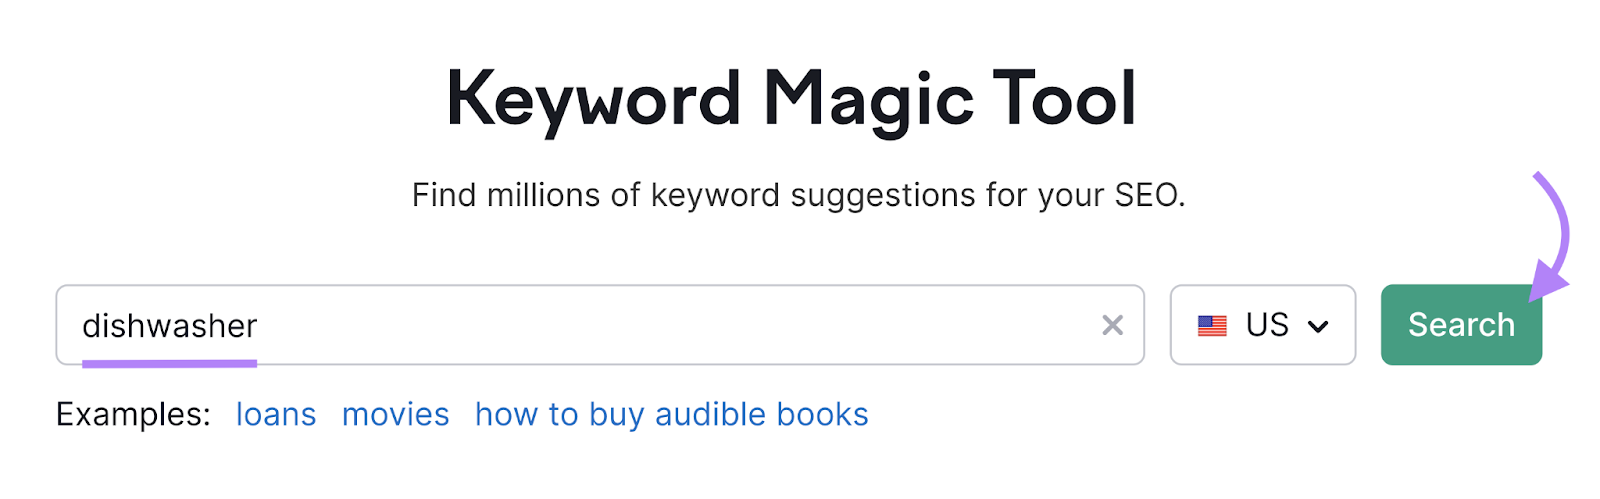 search the word  dishwasher successful  keyword magic tool